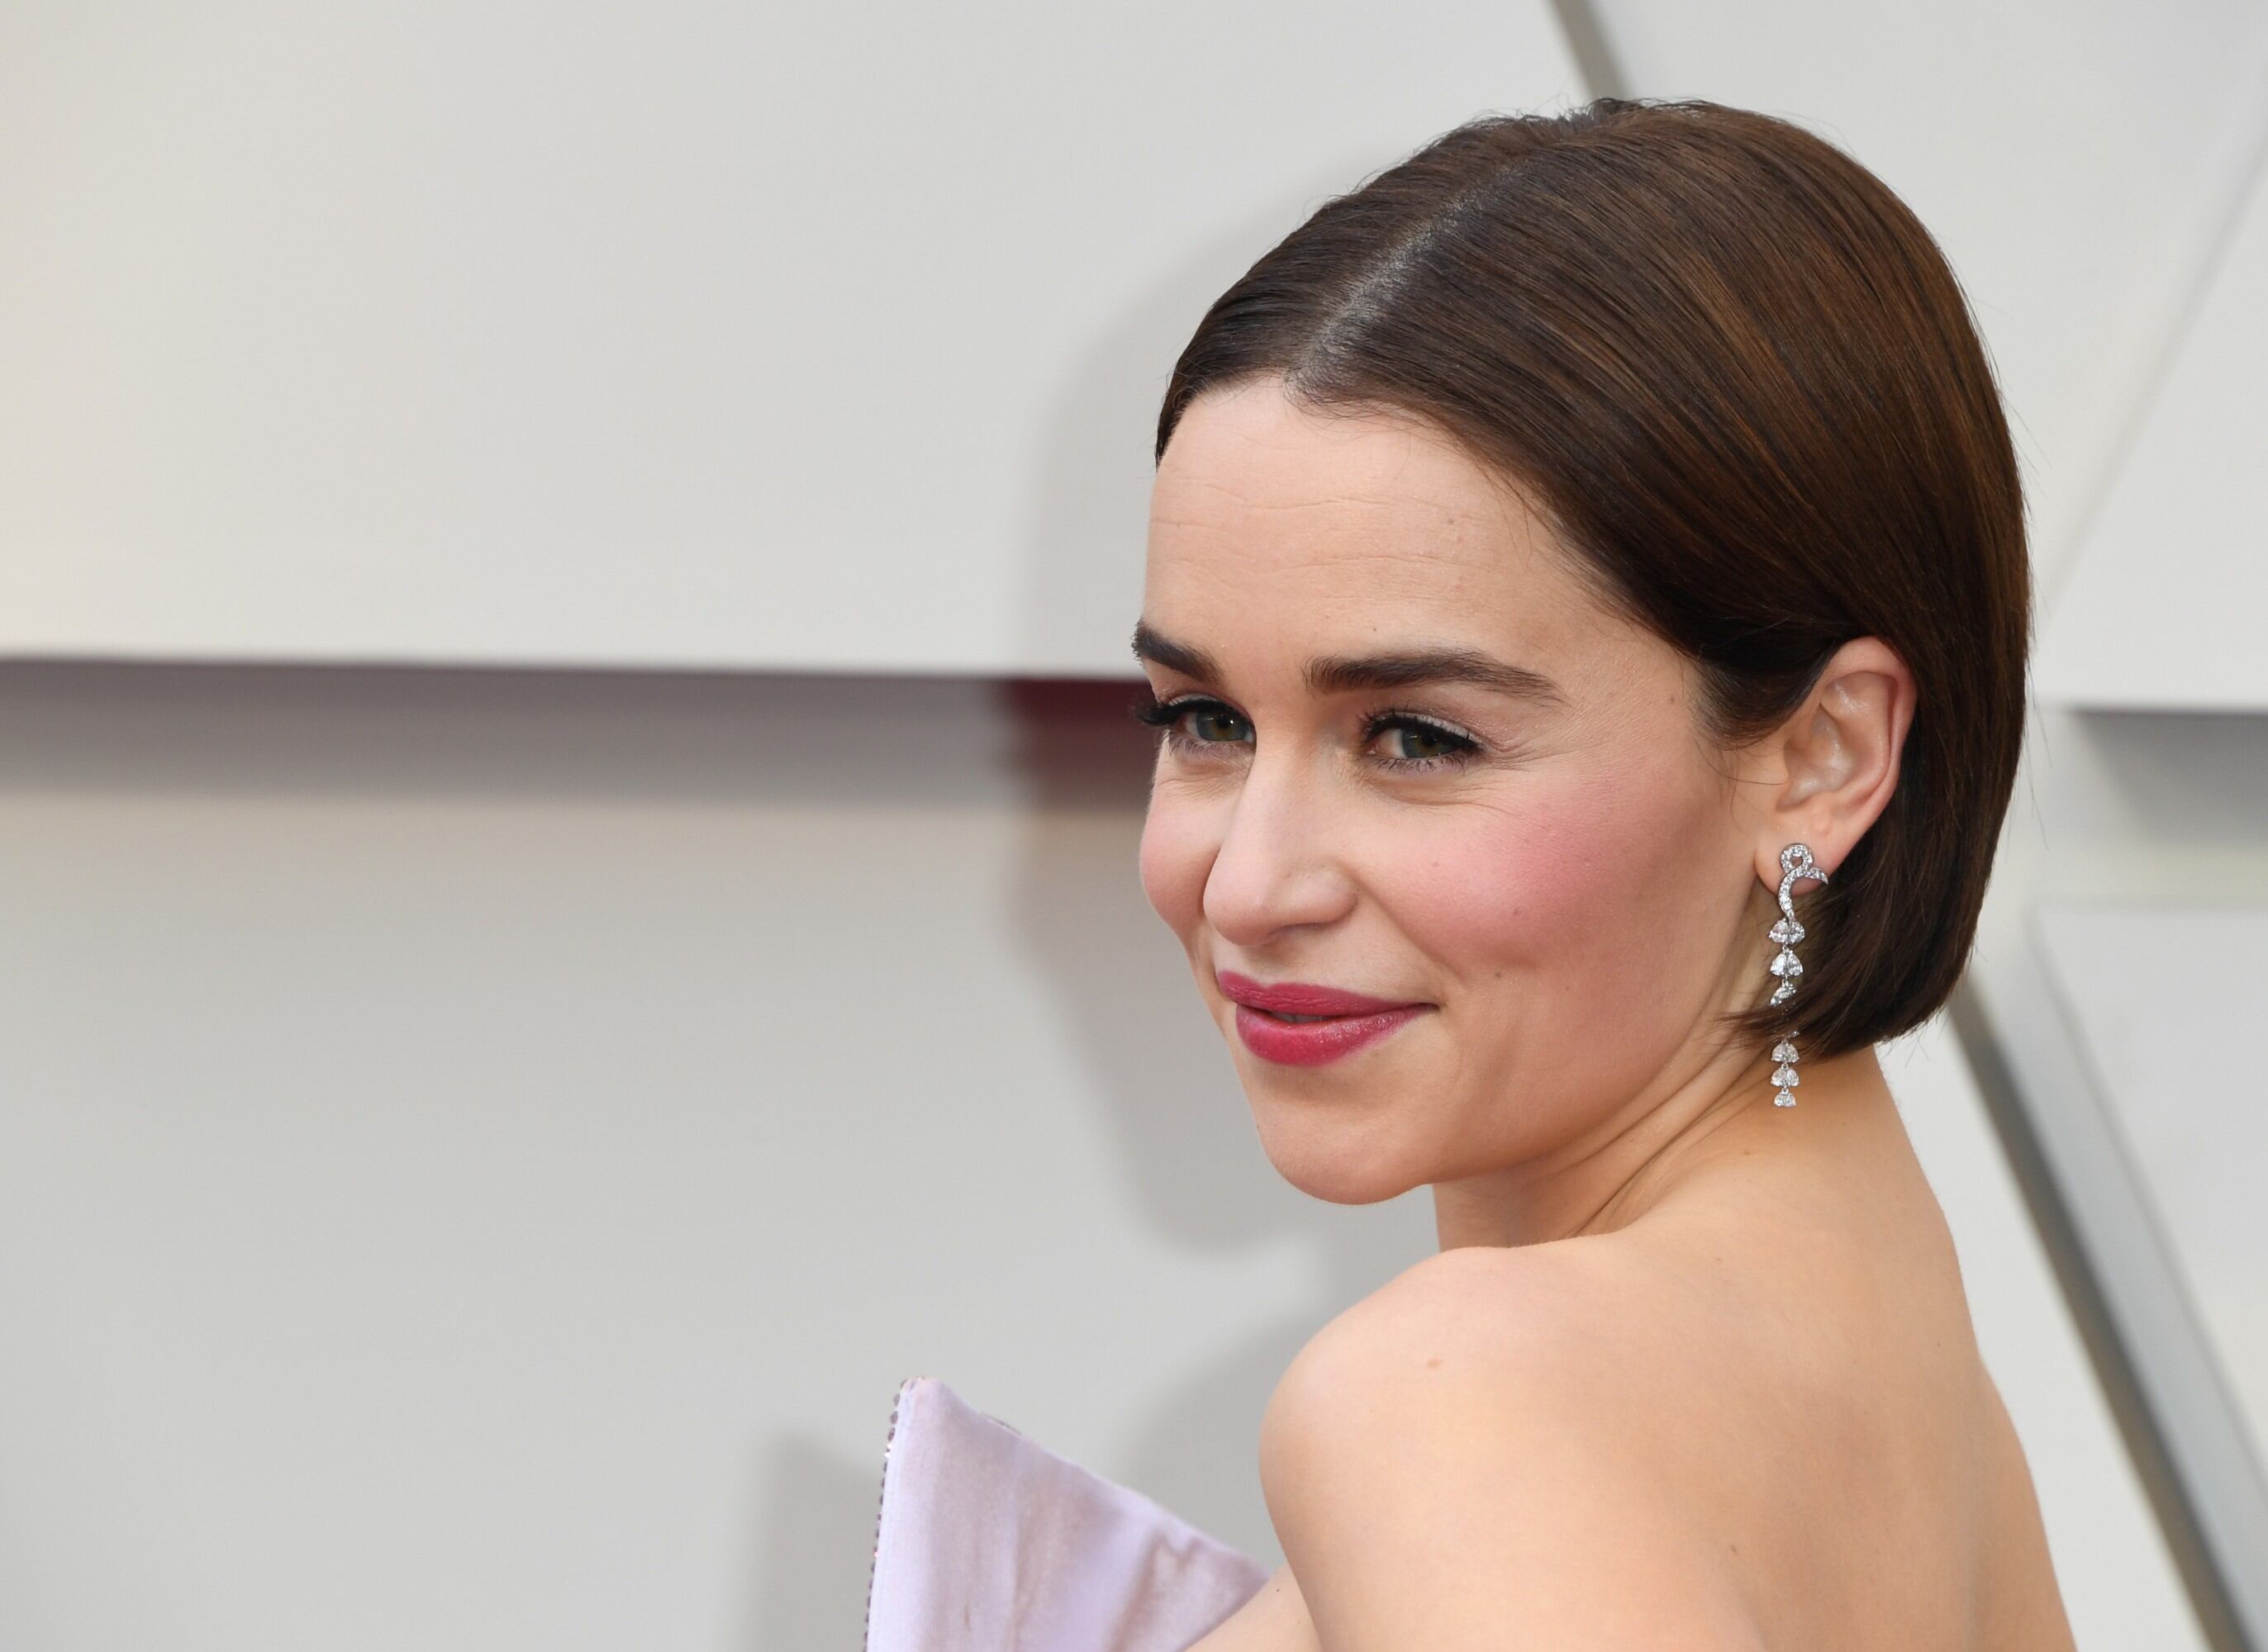 Emilia Clarke, actriz de "Game of Thrones", deslumbró con su belleza a todos los presenten en la alfombra roja de los Oscar 2019. (Foto: AFP)